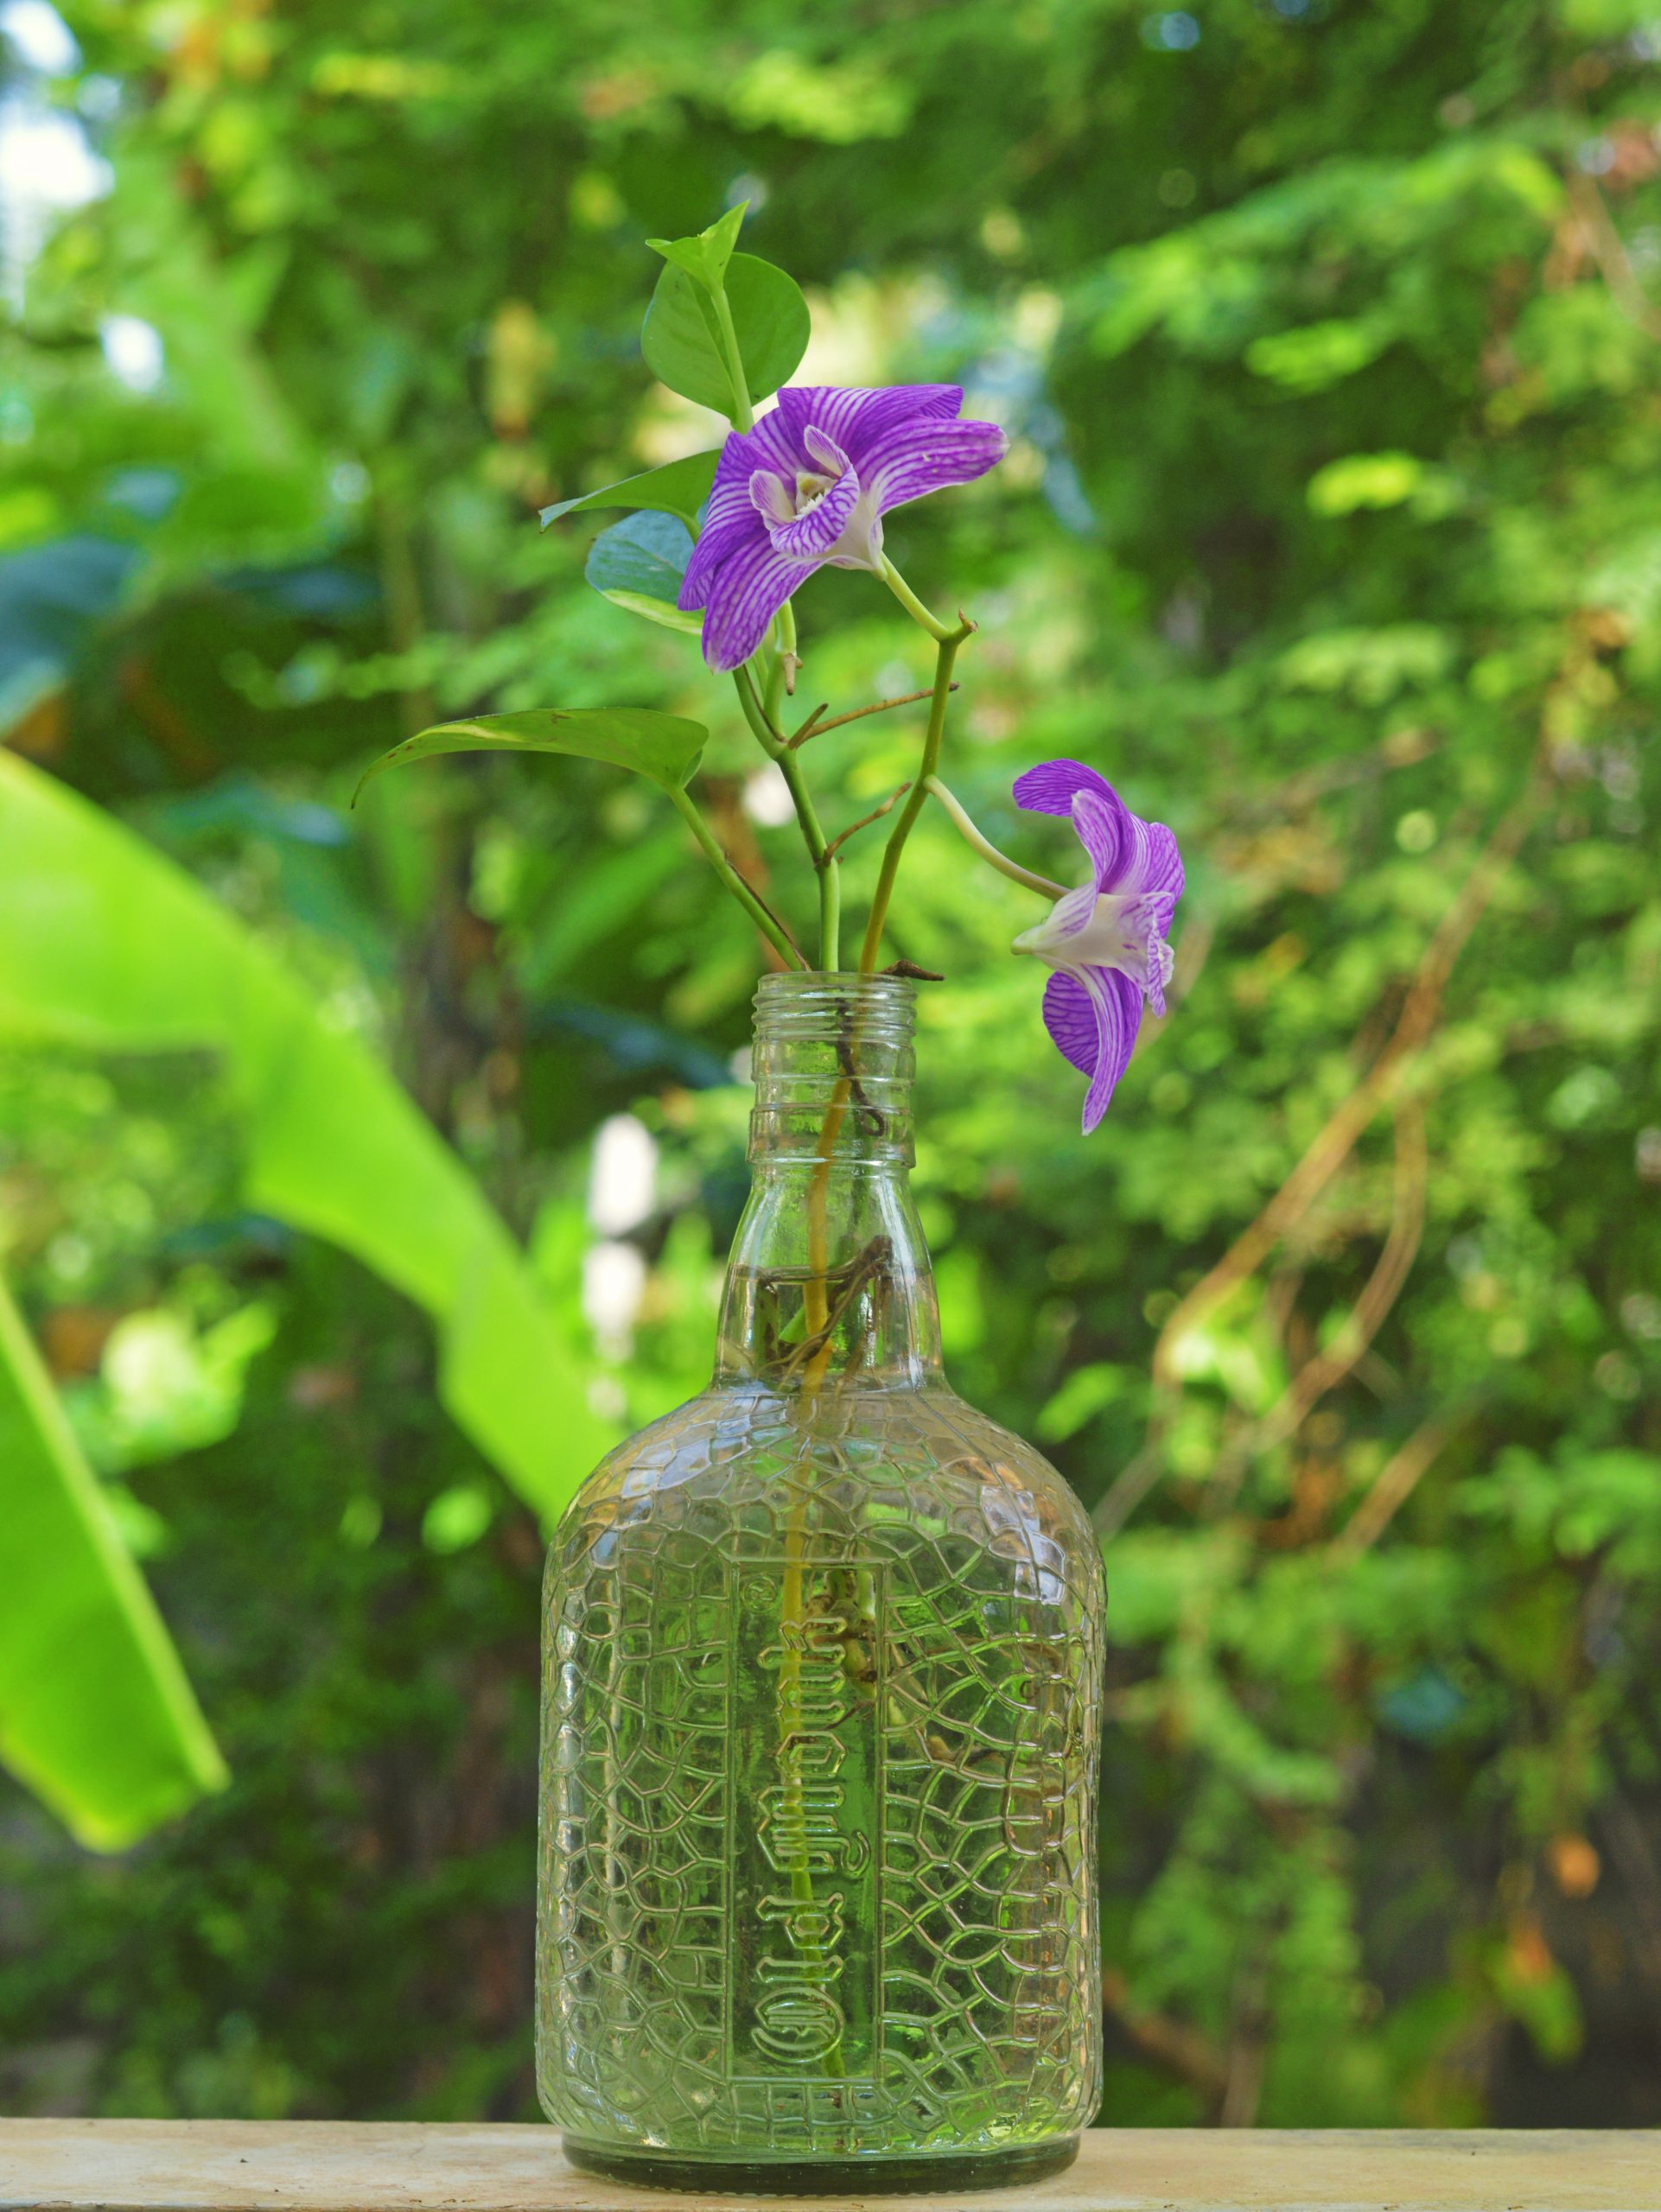 flower in a bottle